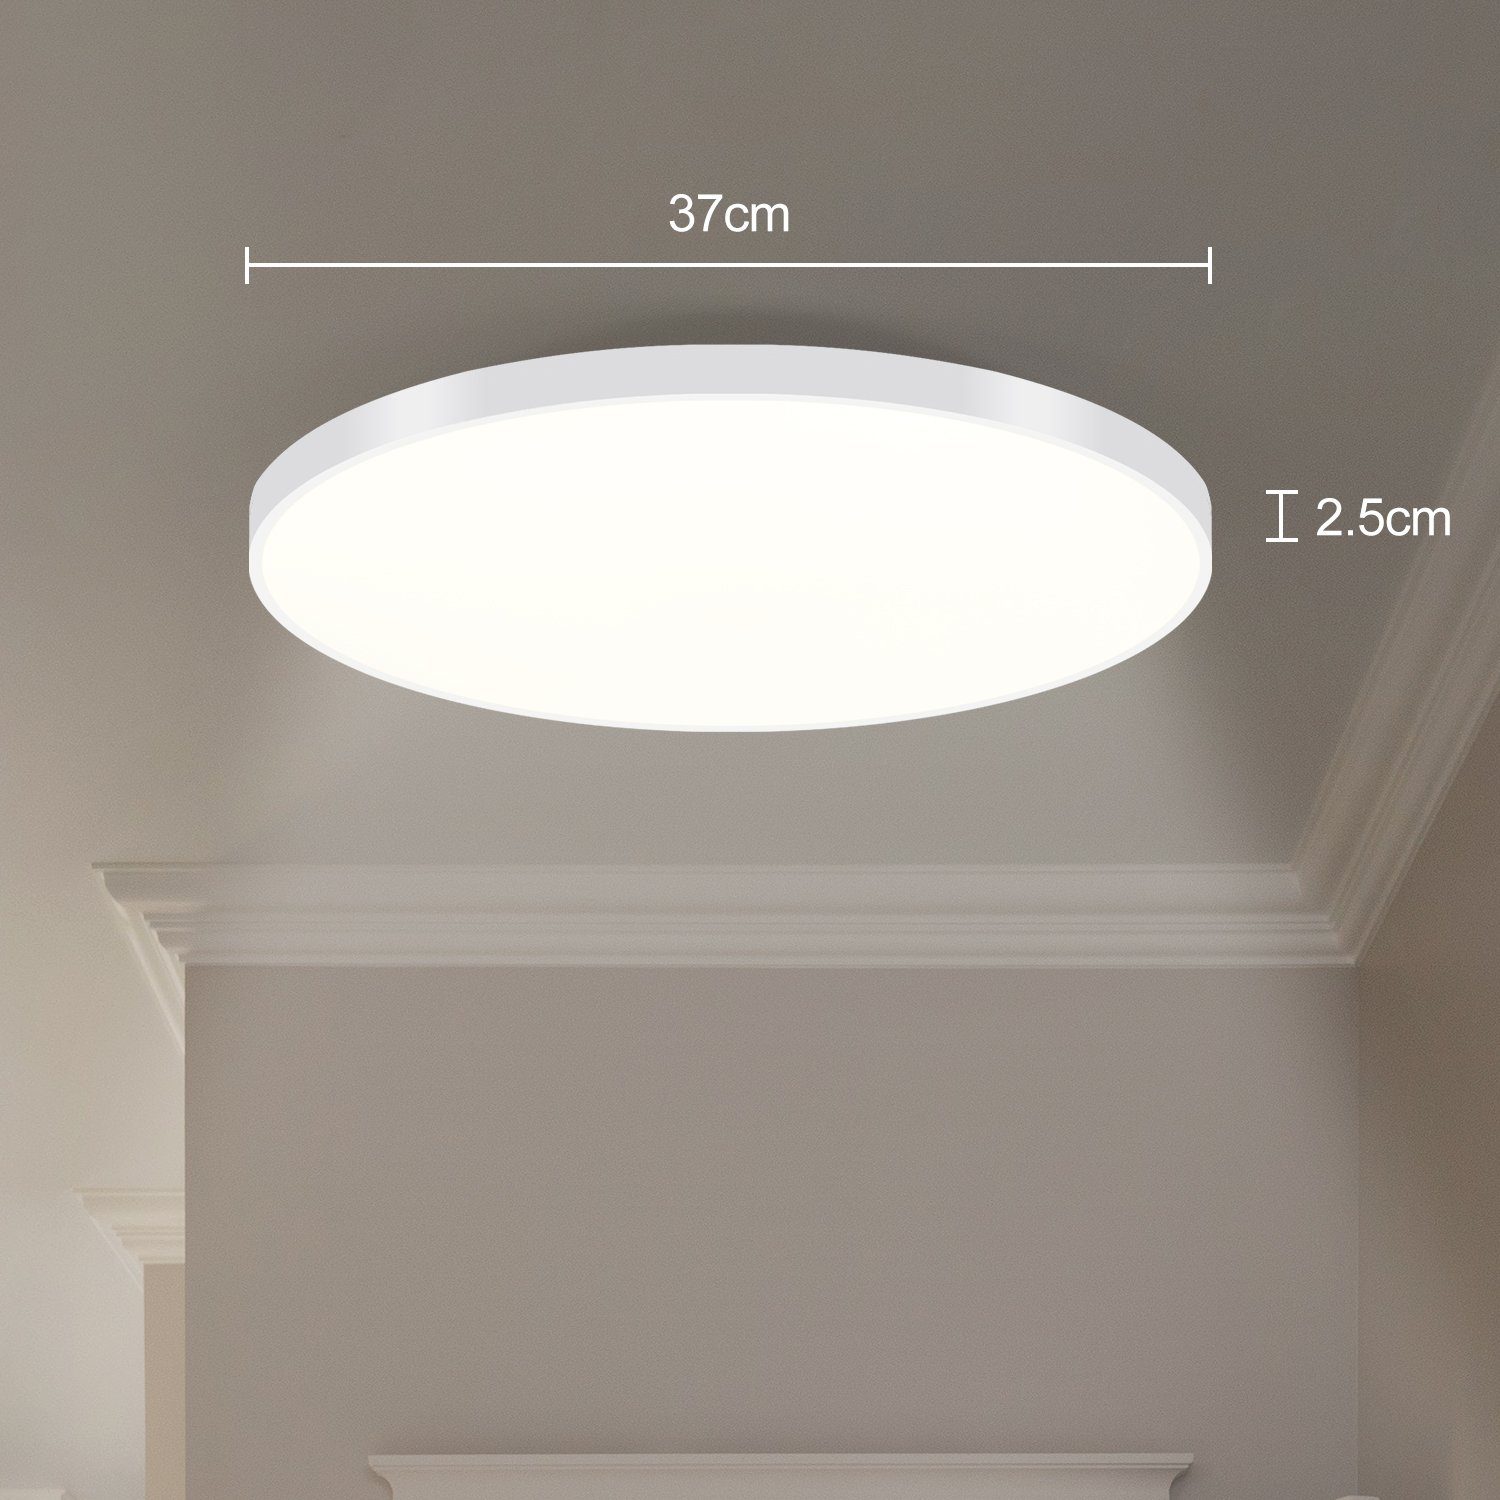 ZMH LED Deckenleuchte Stufenlos IP44 Weiß LED X 2.5 cm, ∅37 warmweiß-kaltweiß, fest integriert, Dimmbar